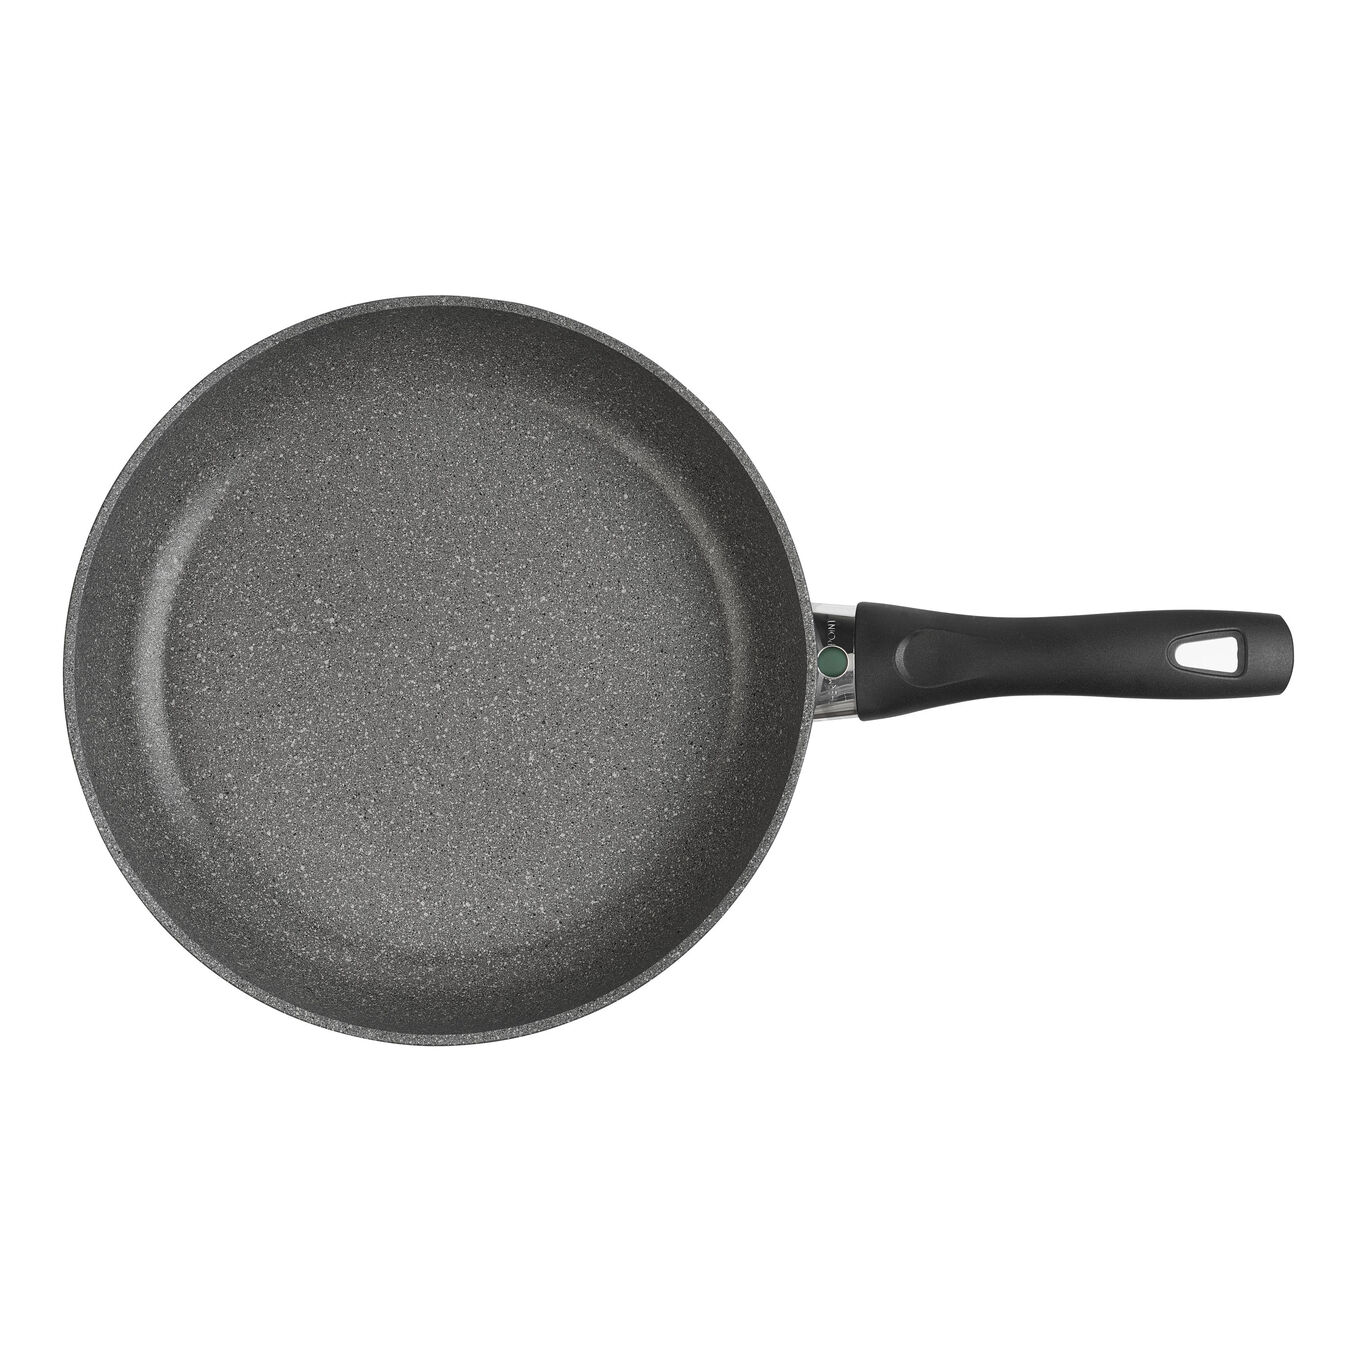  Granitium round 28cm/11 inch frying pan, grey,,large 2